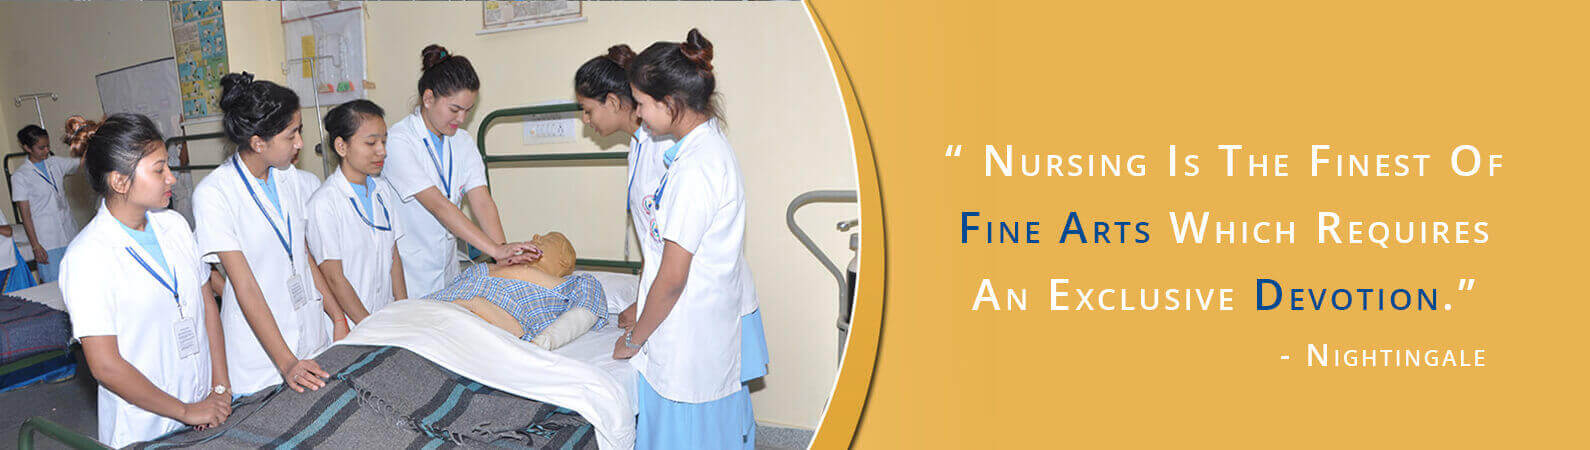 Best Nursing Colleges in Bangalore - Msc